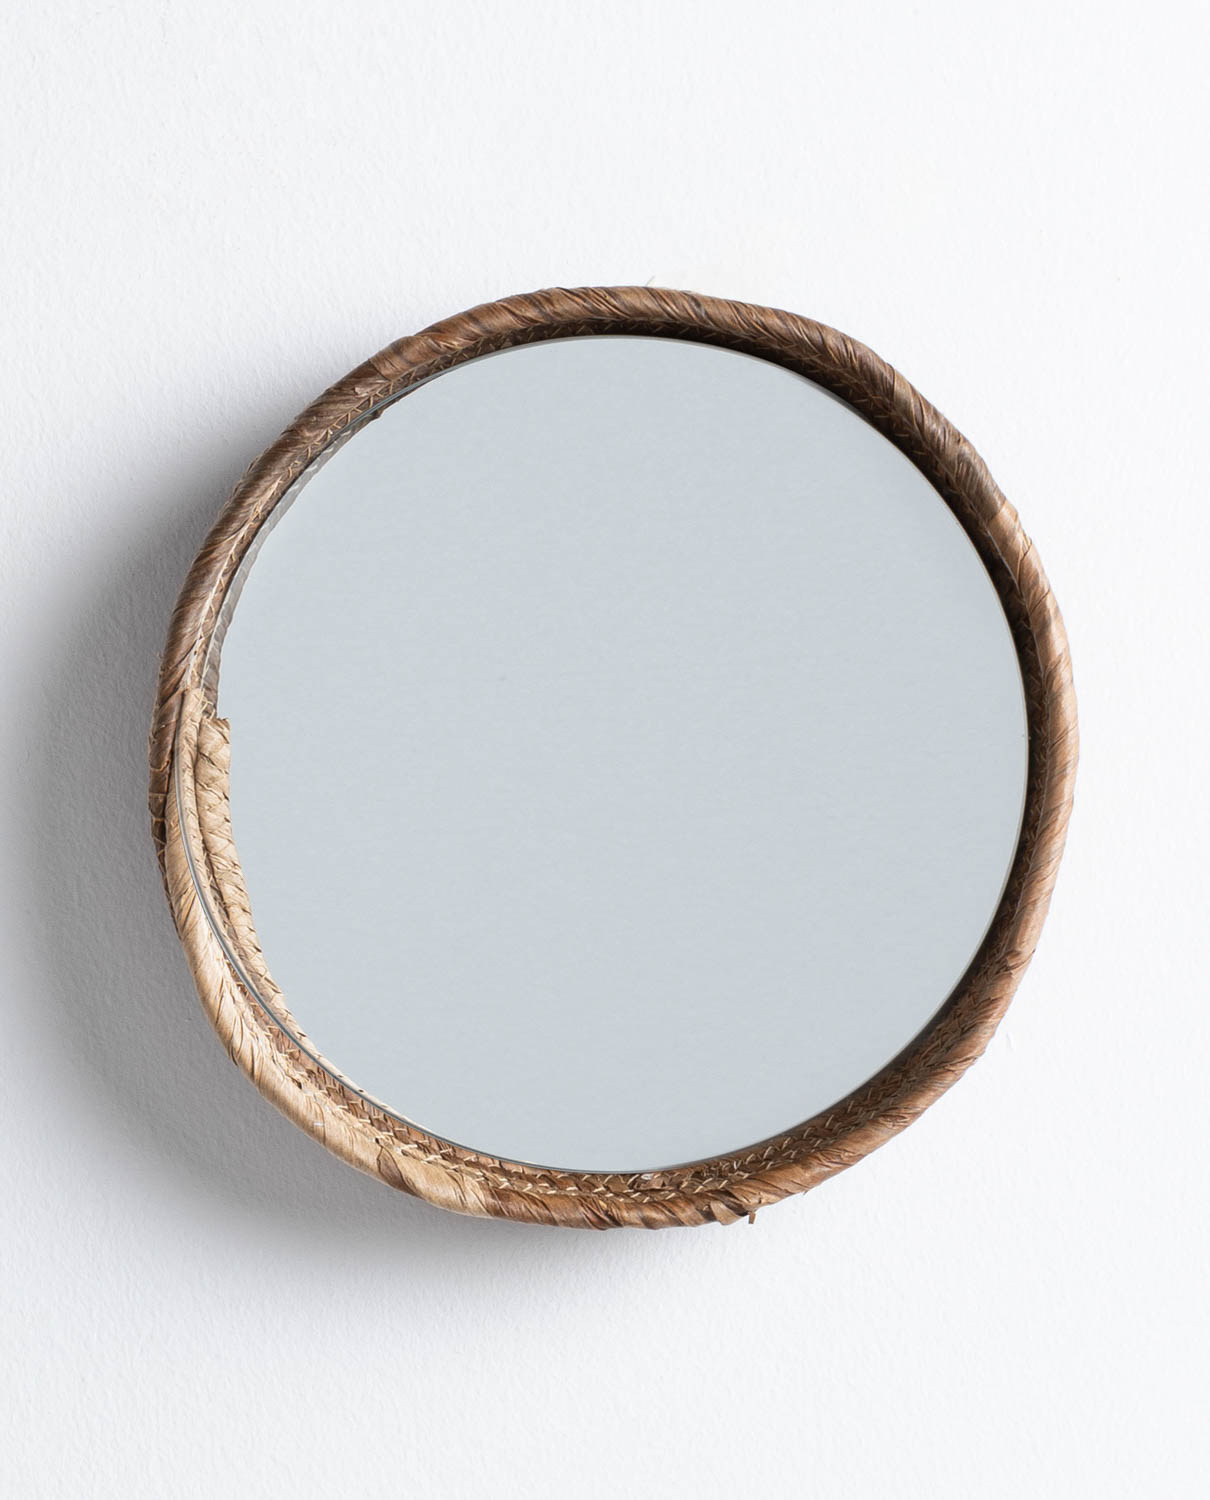 Specchio da Parete Rotondo in Legno (Ø27 cm) Banli, immagine della galleria 1